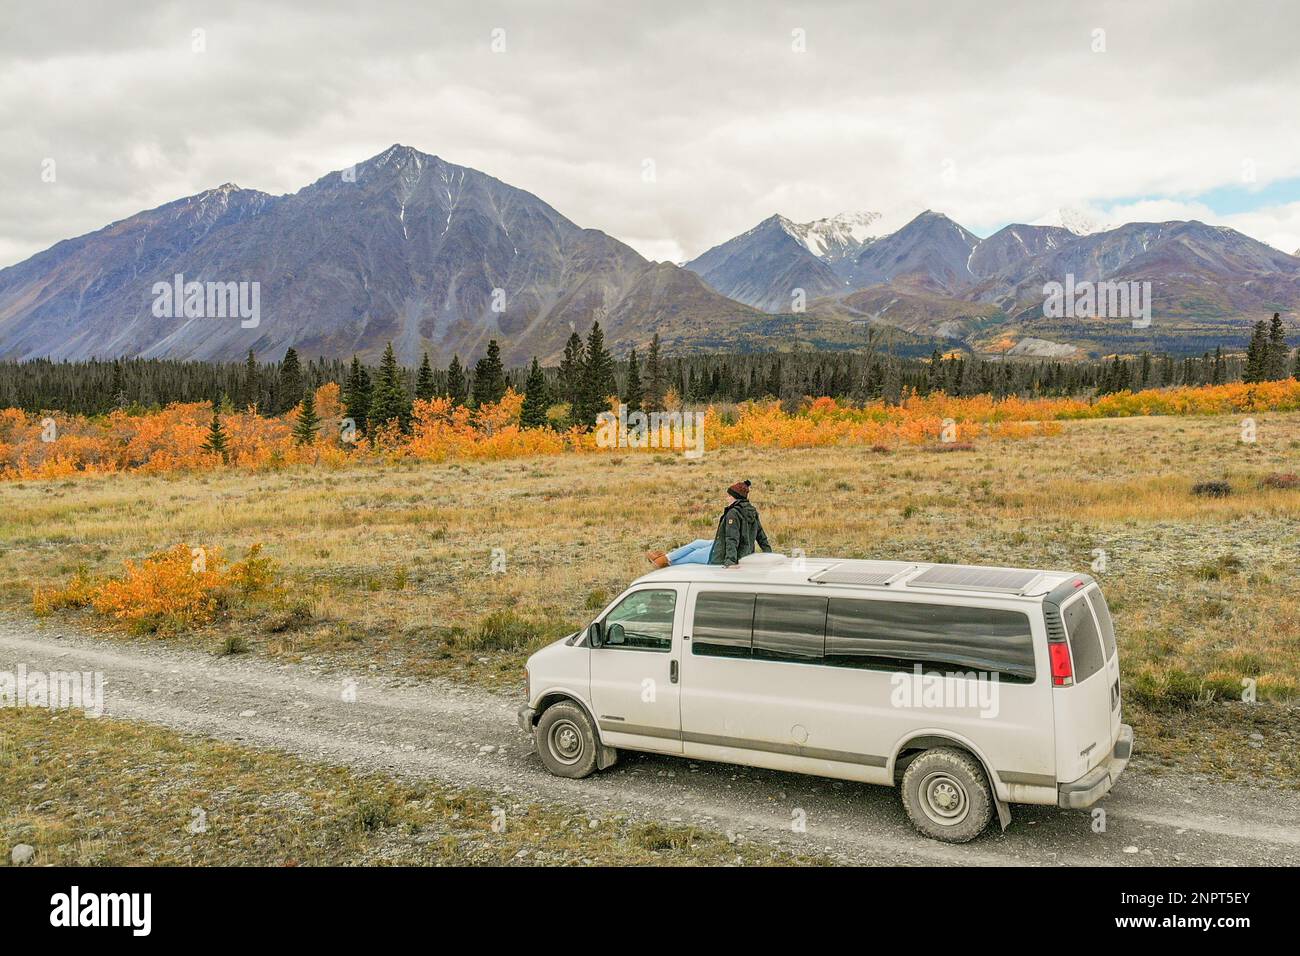 Voyager au-dessus d'une camionnette de camping pendant la saison d'automne avec un arrière-plan incroyable de montagnes. Banque D'Images